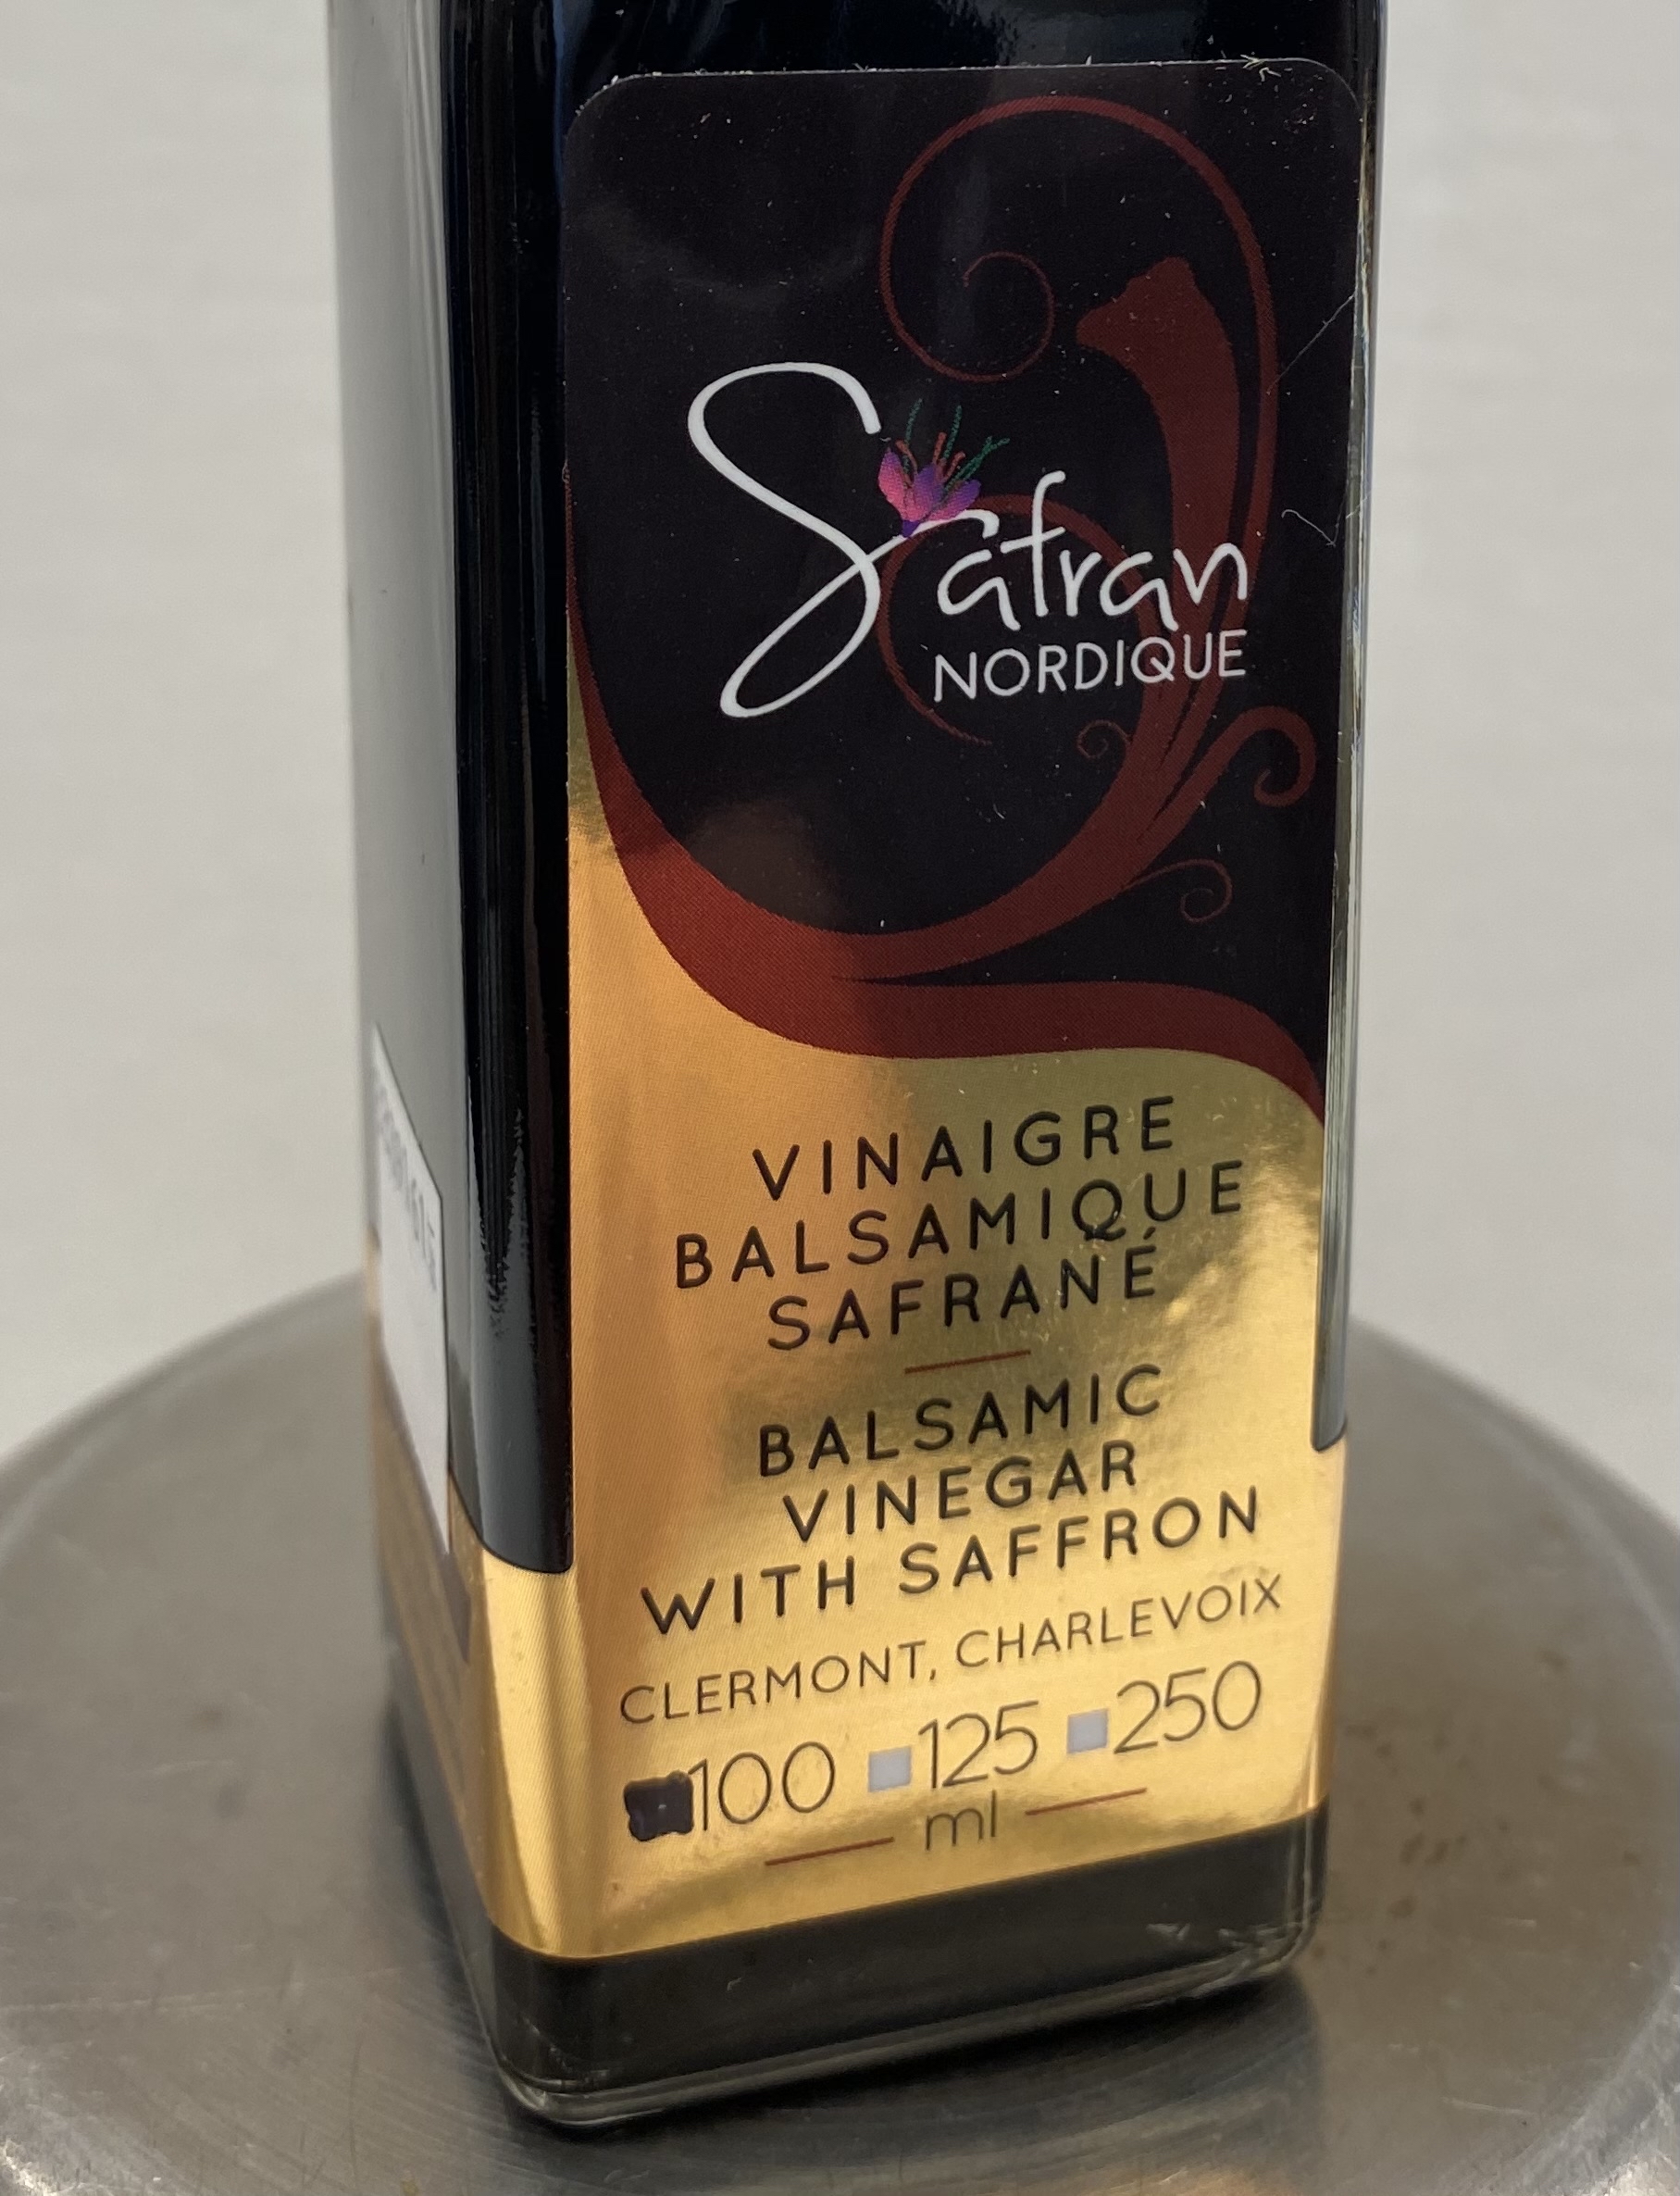 Nocturne : Vinaigre balsamique au miel de sarrasin